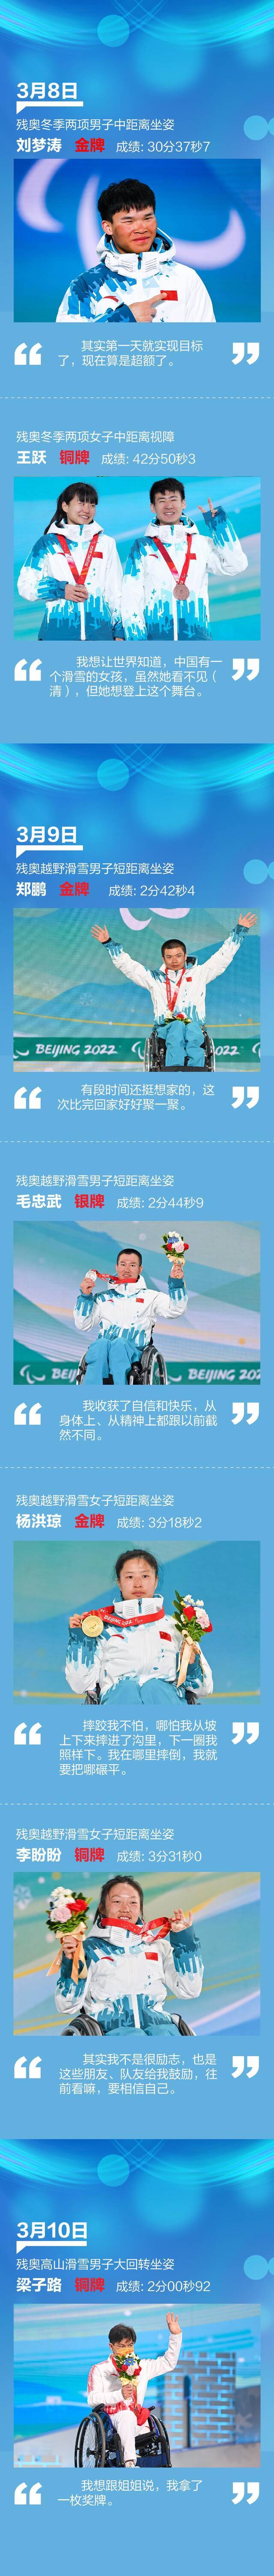 61枚奖牌 中国第一！请记住北京冬残奥会运动员的笑容